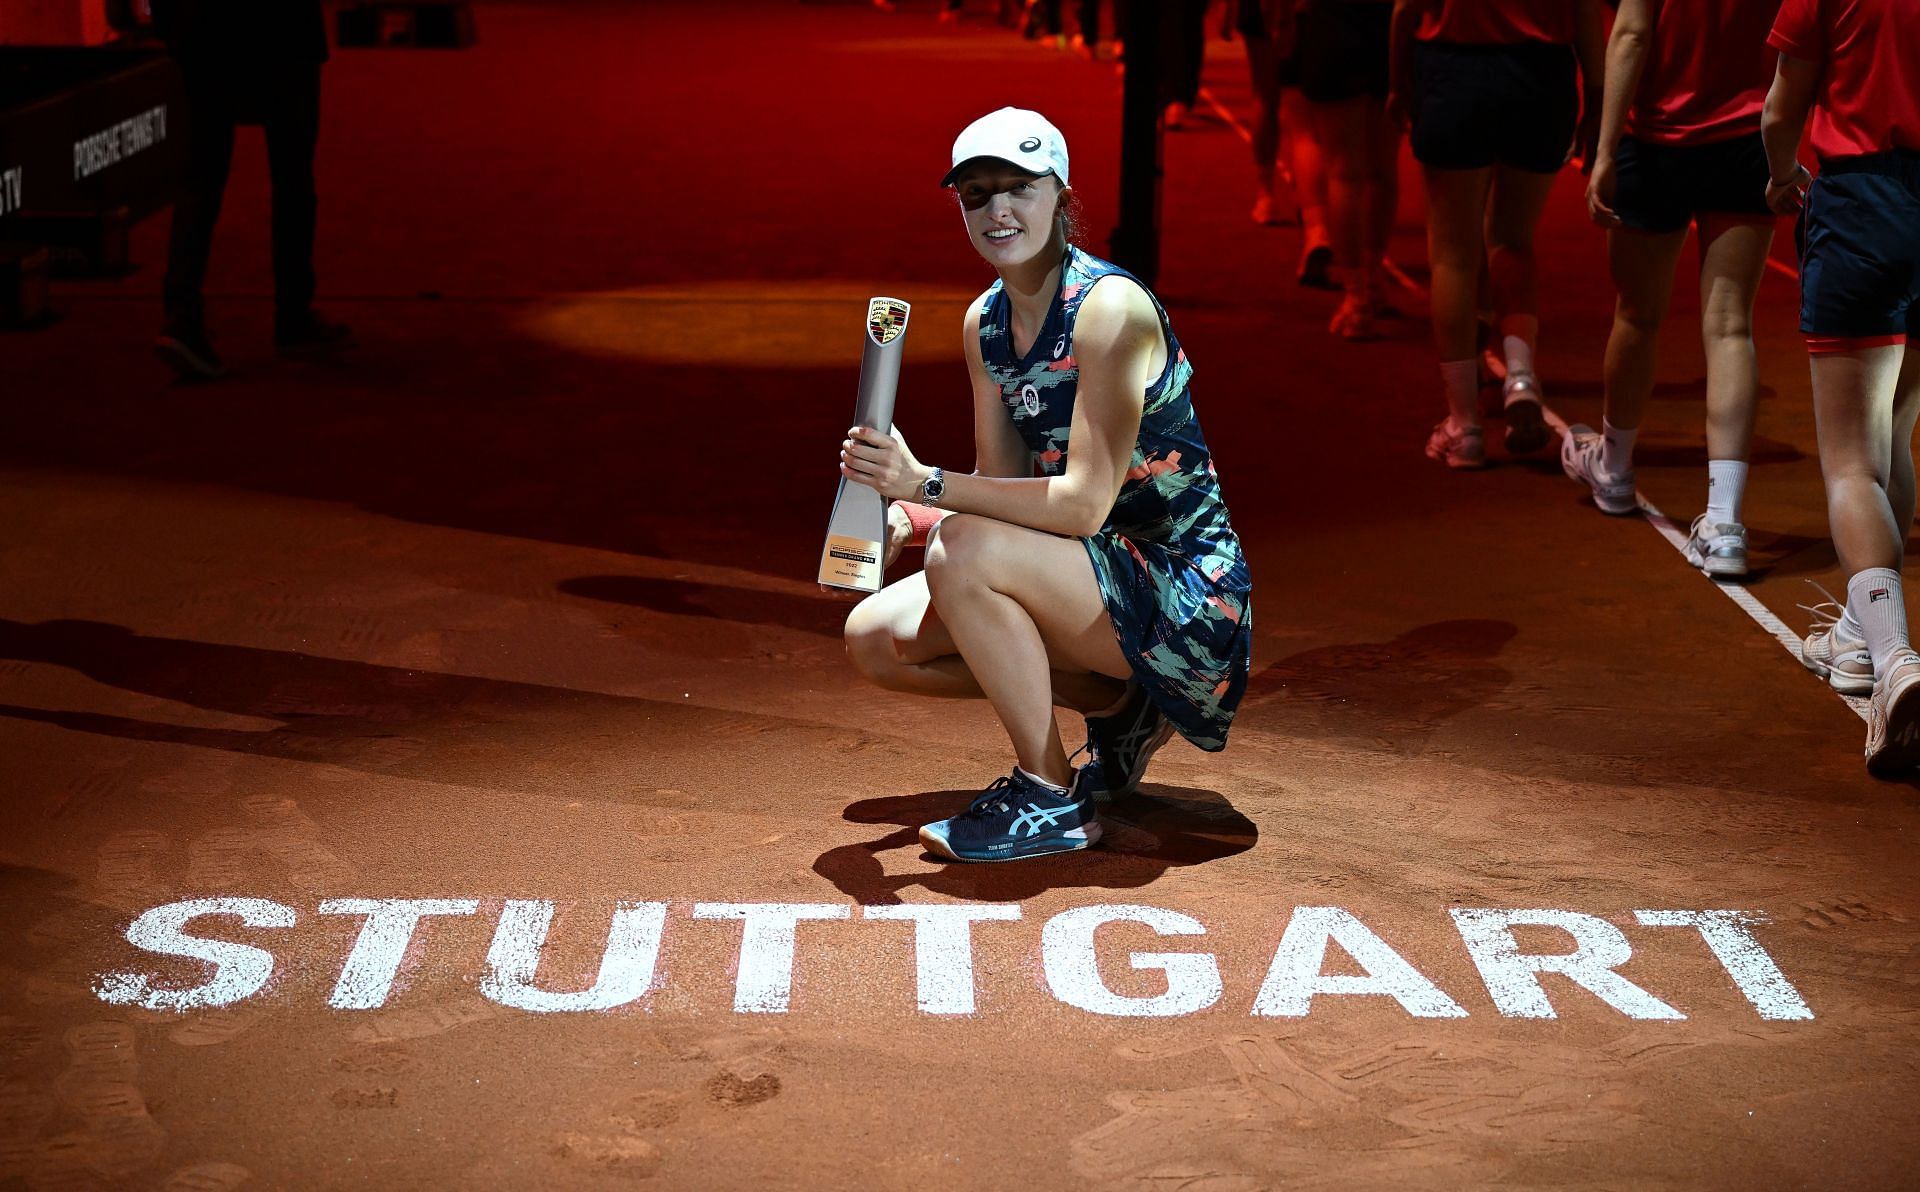 Iga Swiatek poses with the 2022 Stuttgart Open trophy